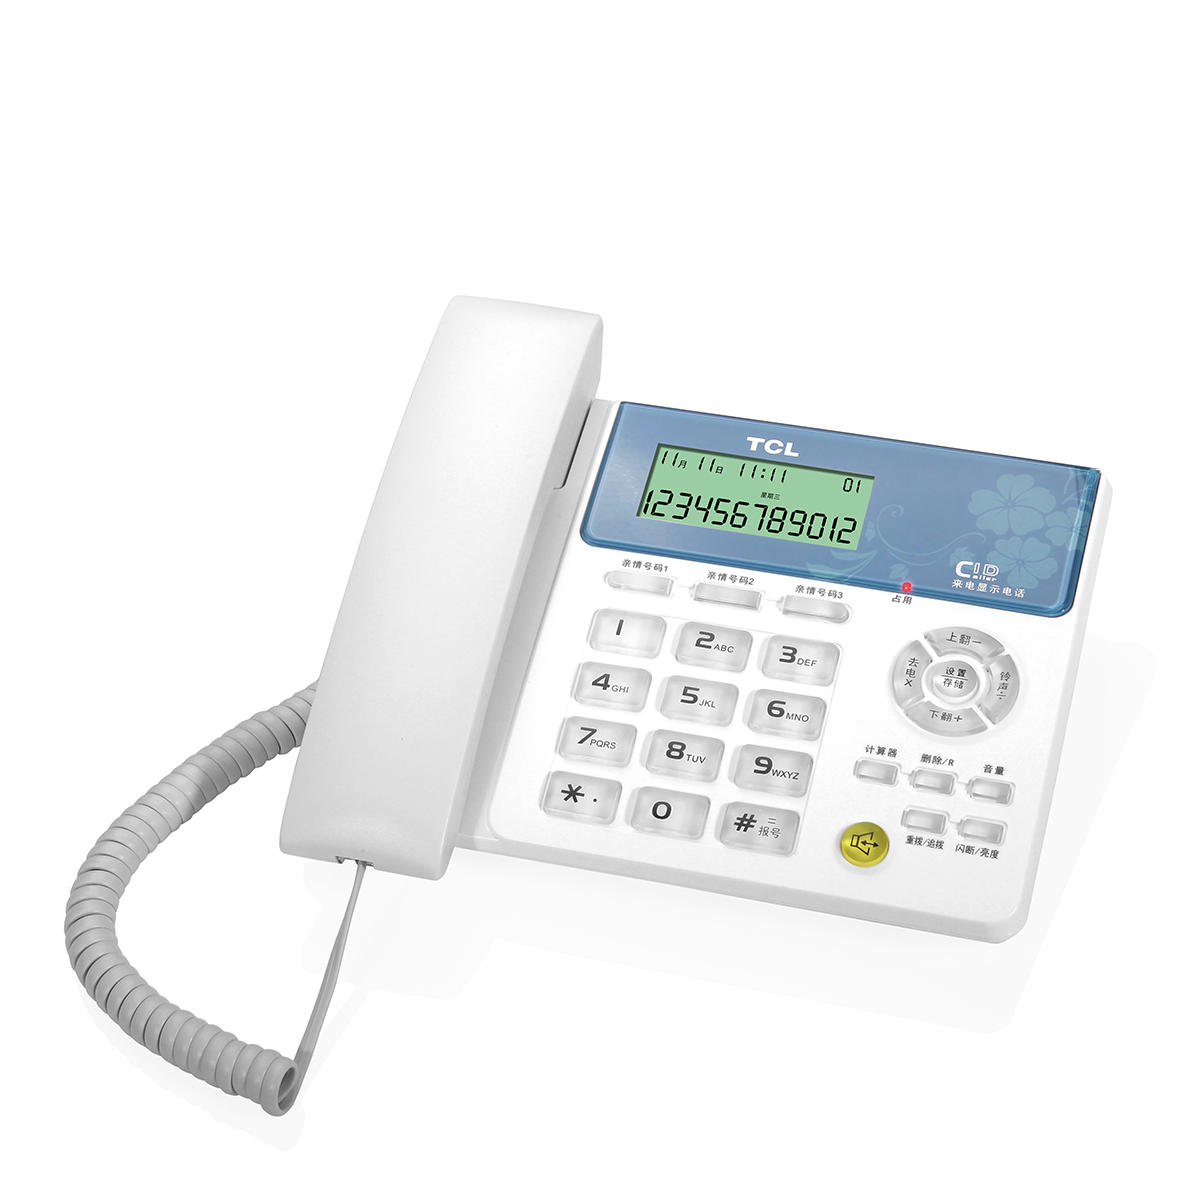 TCL 128 电话机 座机 固定电话 电信电话 来电报号 双接口 新版橙色背光 白蓝高清大图